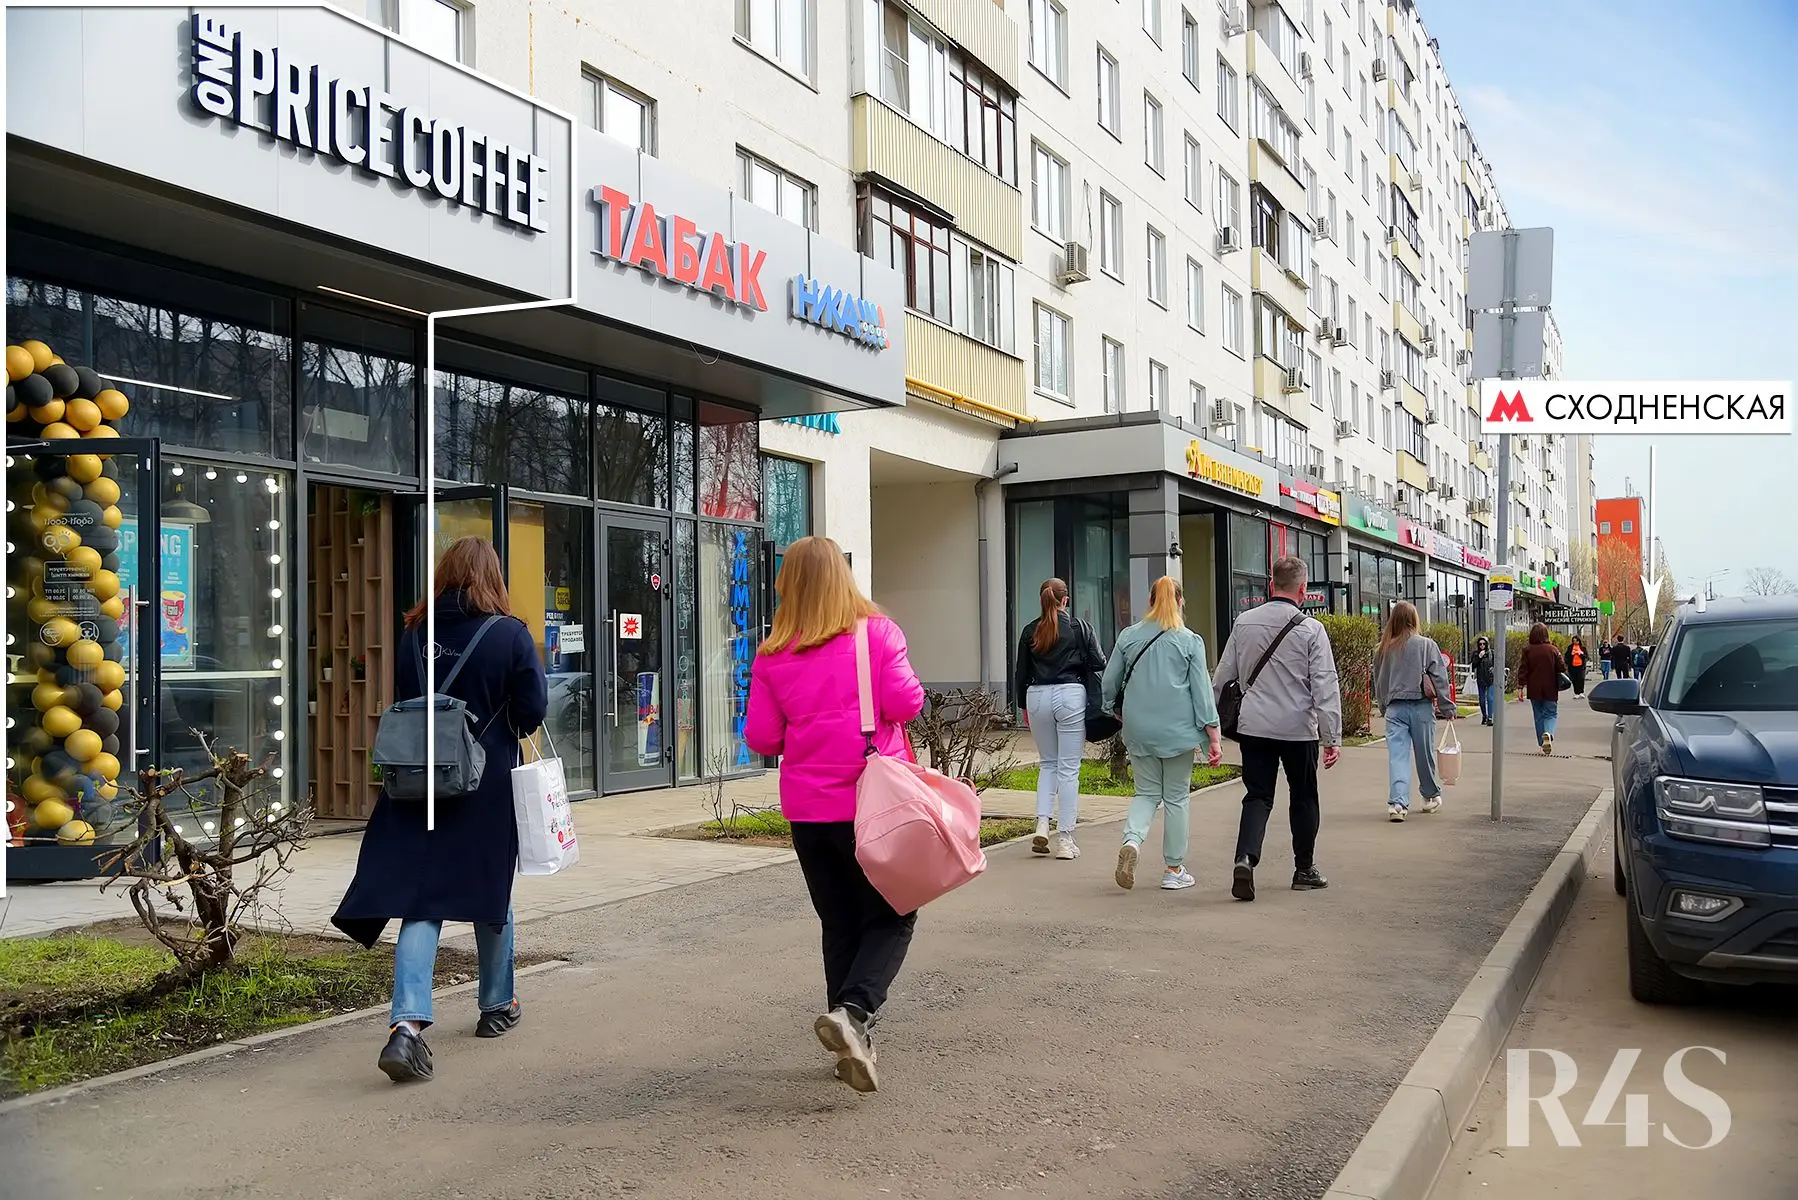 Продажа готового арендного бизнеса площадью 21.1 м2 в Москве: бульвар Яна Райниса, 2к1 R4S | Realty4Sale